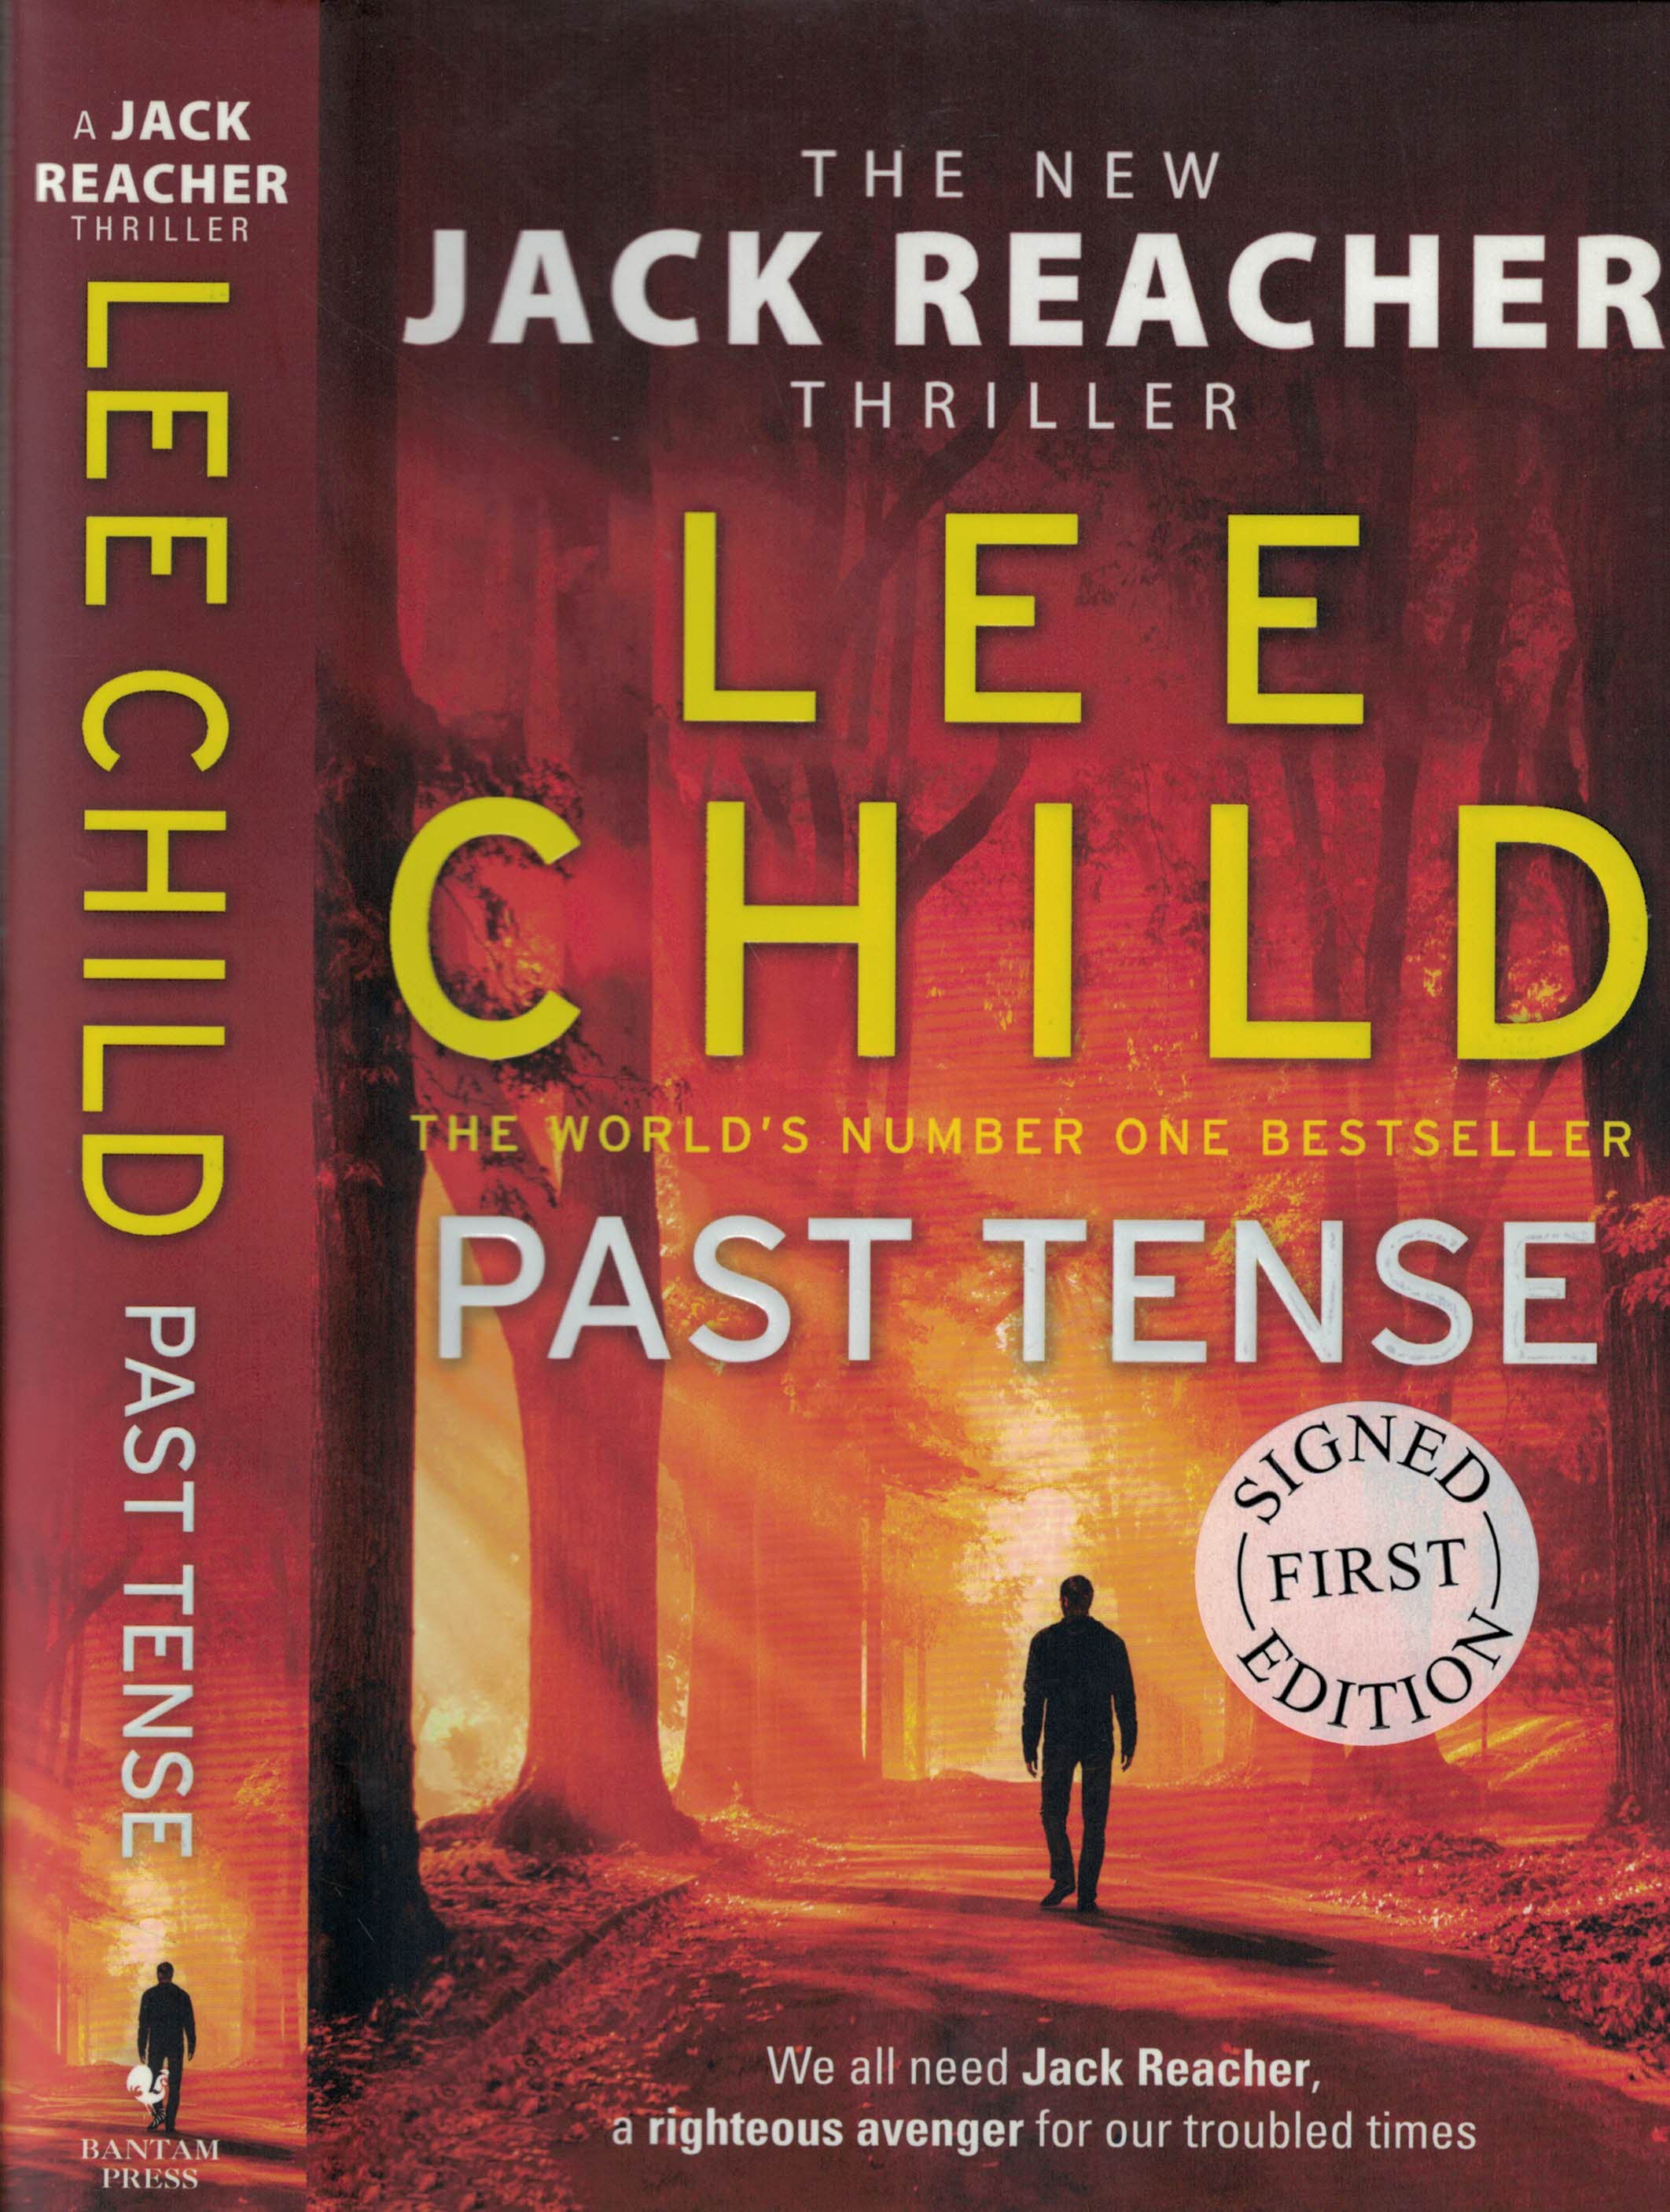 Past Tense [Jack Reacher]. Signed copy.